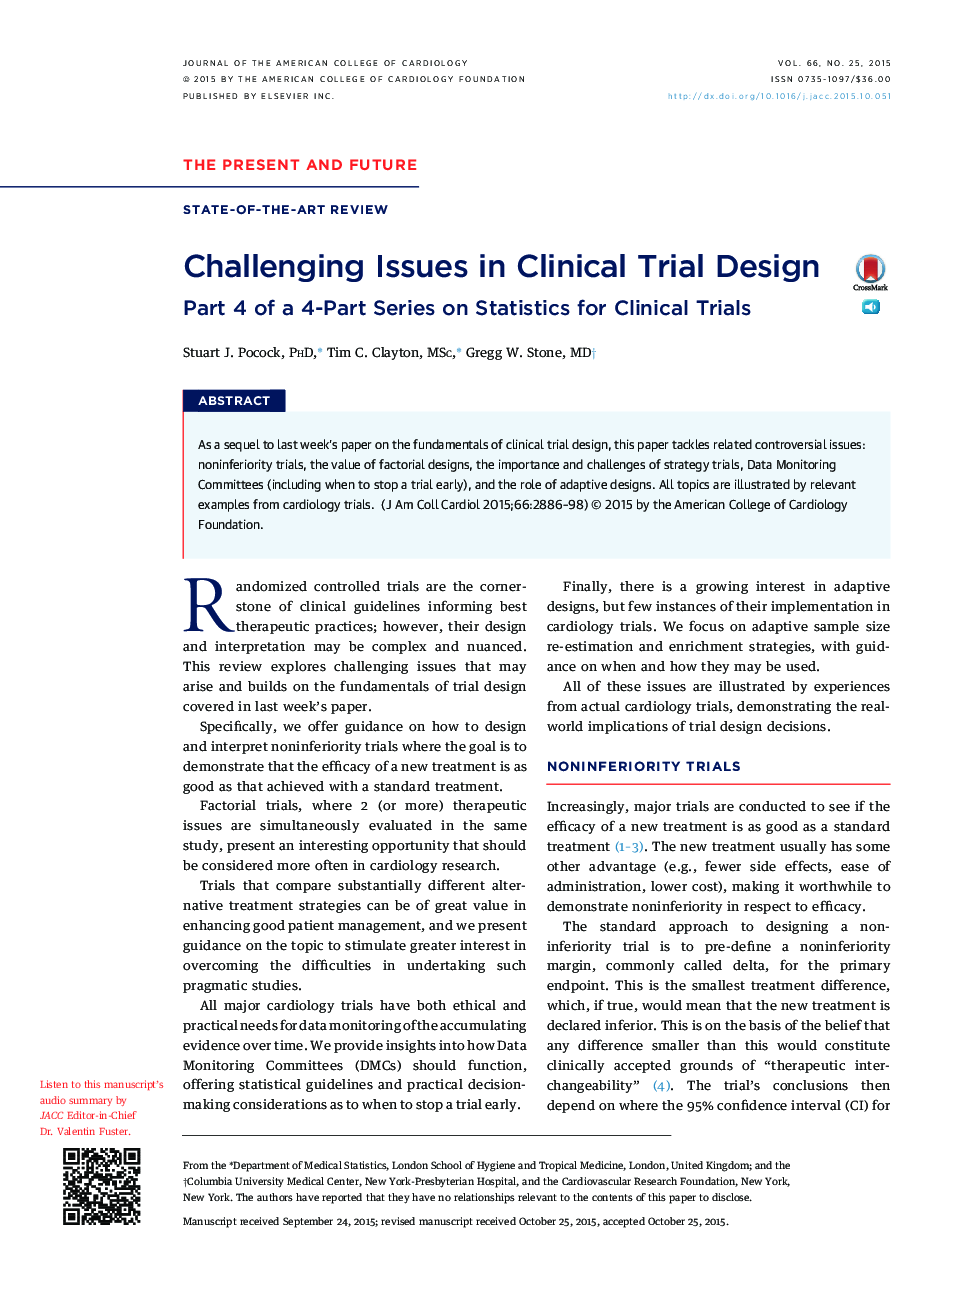 مسائل چالش برانگیز در طراحی آزمایشگاهی بالینی: قسمت چهارم از یک سری 4 بخش در آمار برای آزمایشات بالینی 